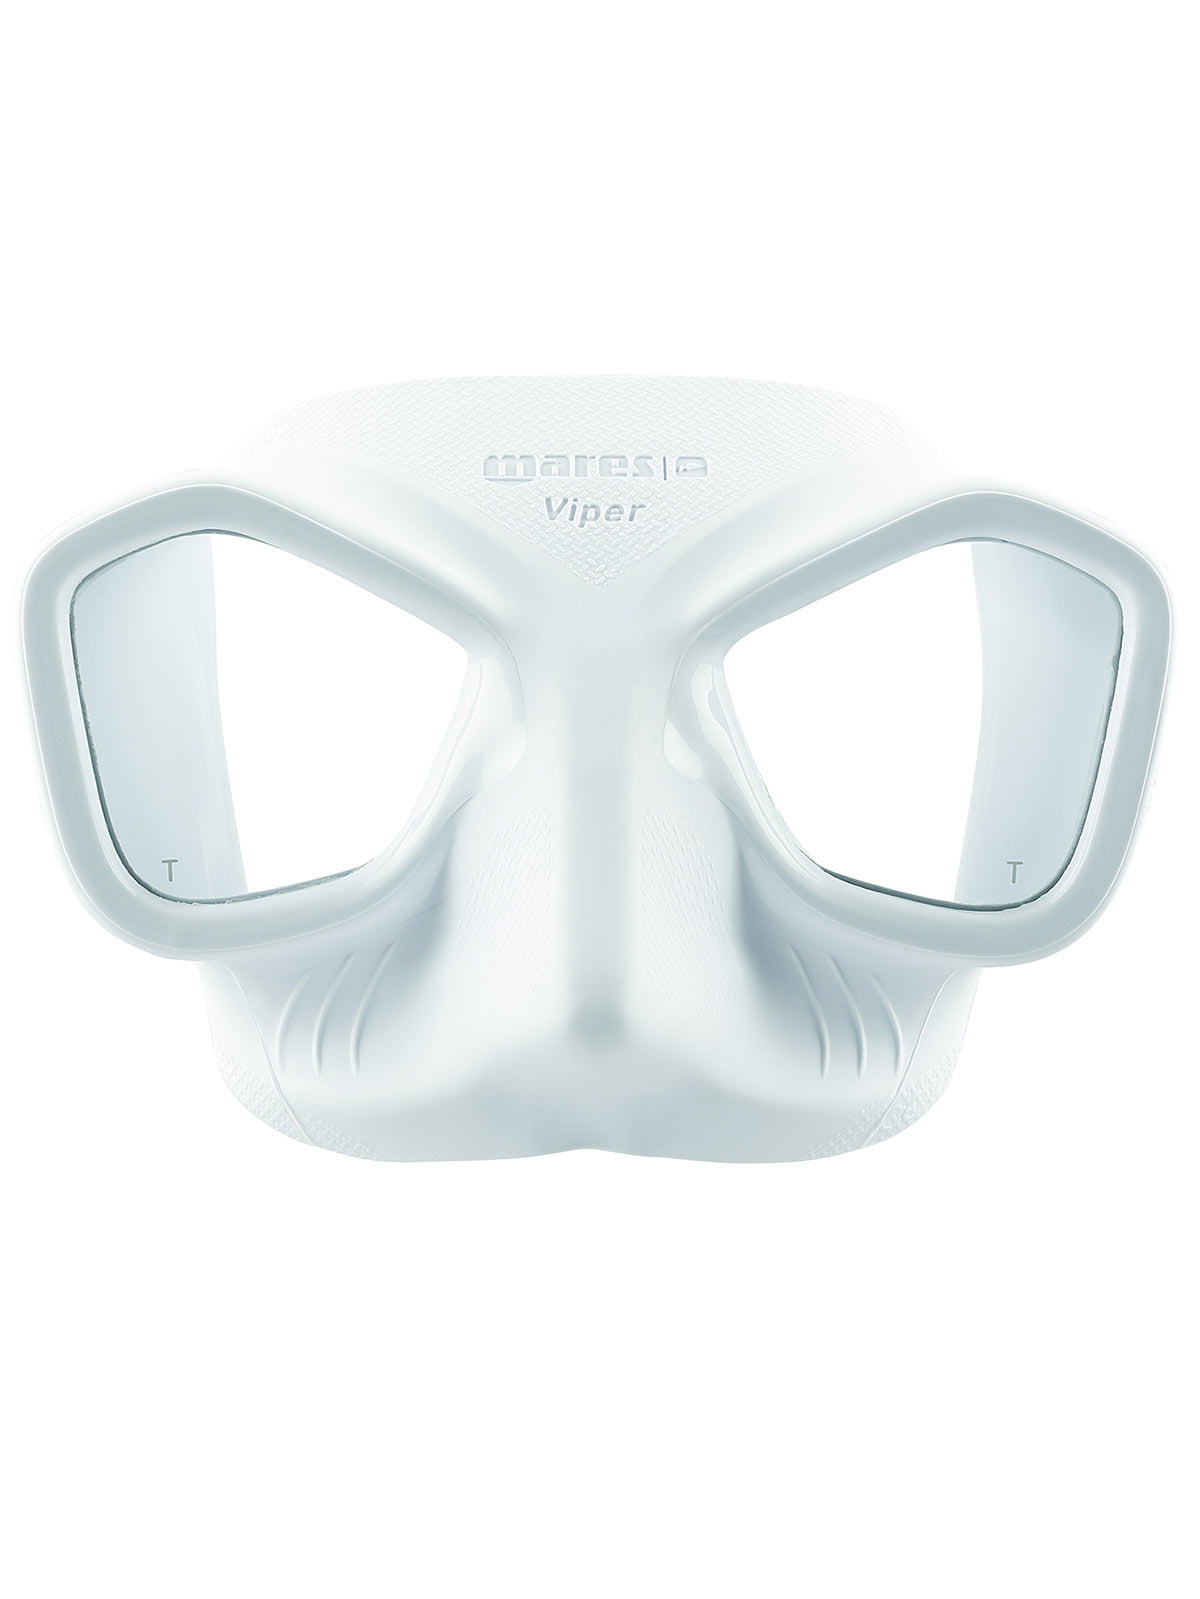 sekstant erklære Dam Mares Viper Mask for Freediving and Spearfishing - Walmart.com